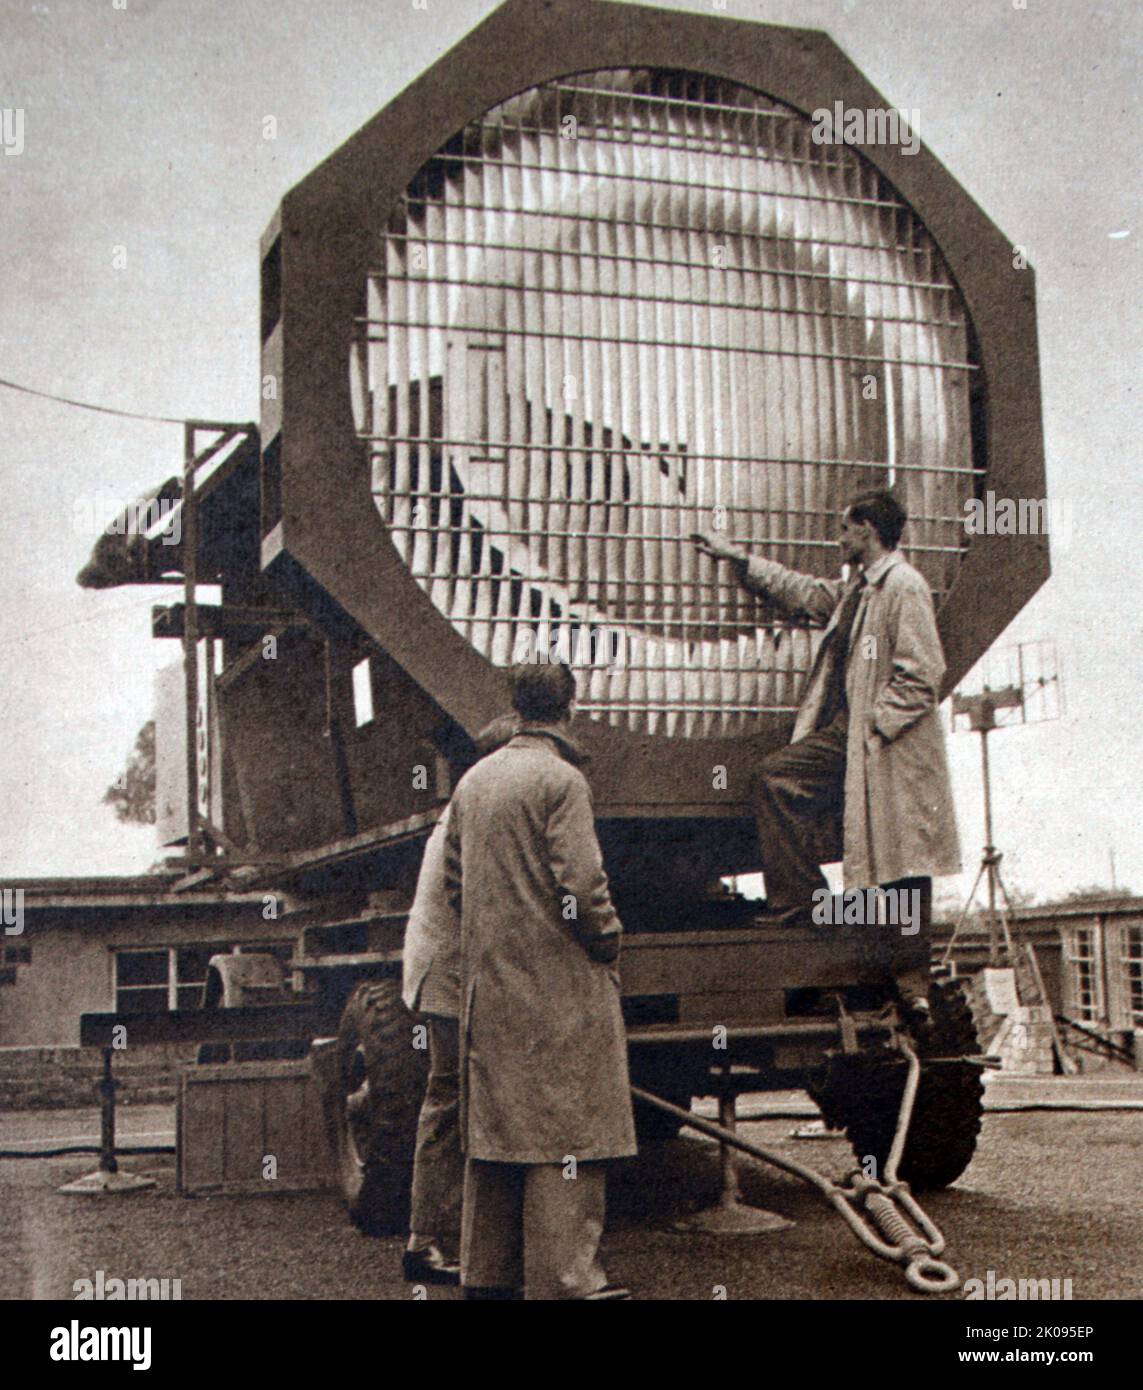 Ministero della fornitura Radar Research and Development Exhibition (RRDE). Un'unità di scansione grandangolare con antenna a lente, esposta presso lo stabilimento di ricerca e sviluppo radar. Foto Stock